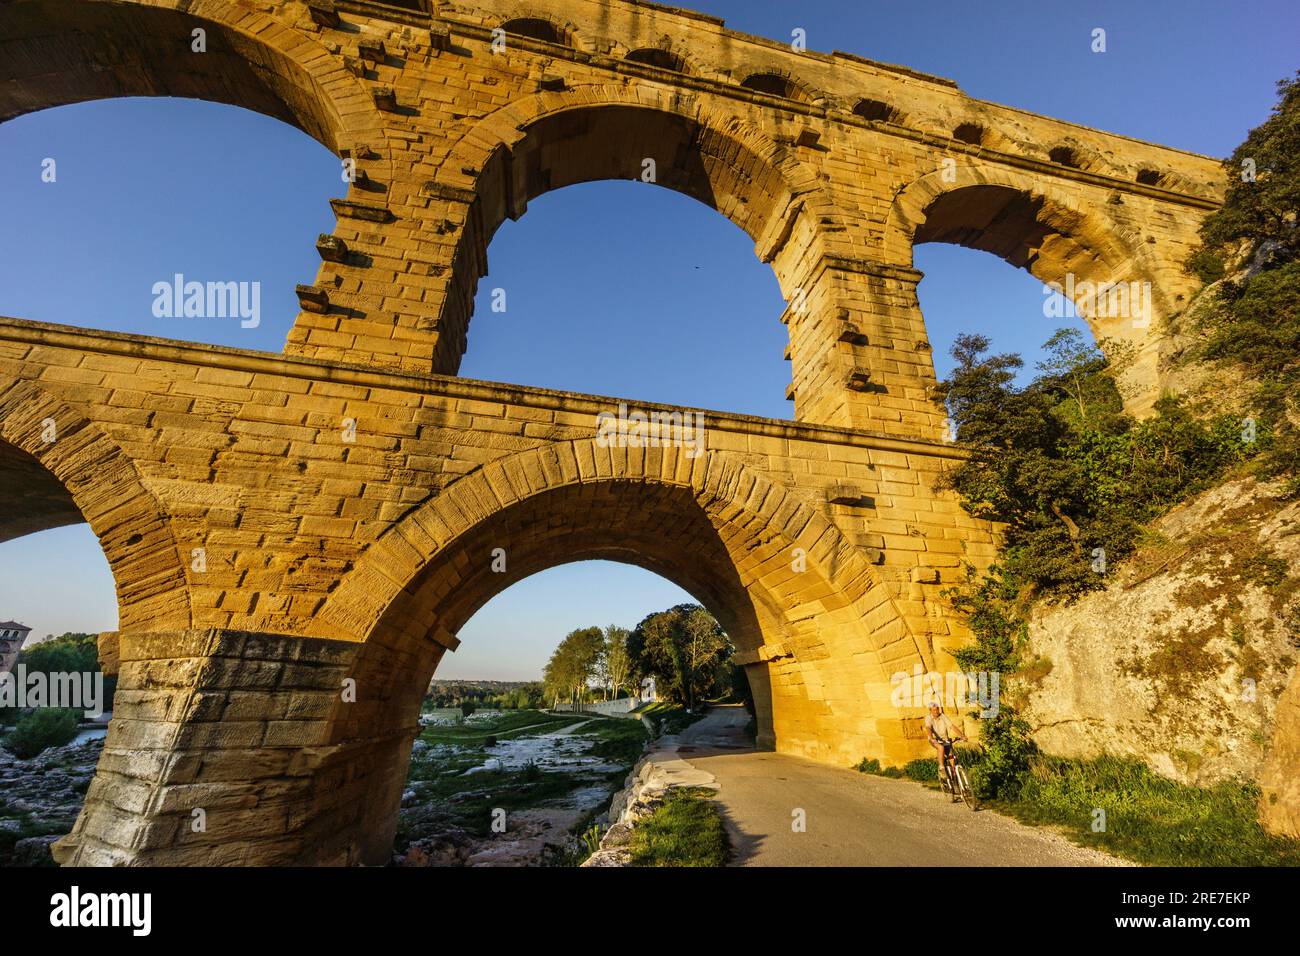 Puente de Gard ,acueducto patrimonio de la humanidad, construido por el Imperio romano, siglo I d.C , Remoulins, departamento de Gard,Francia, Europa Stock Photo